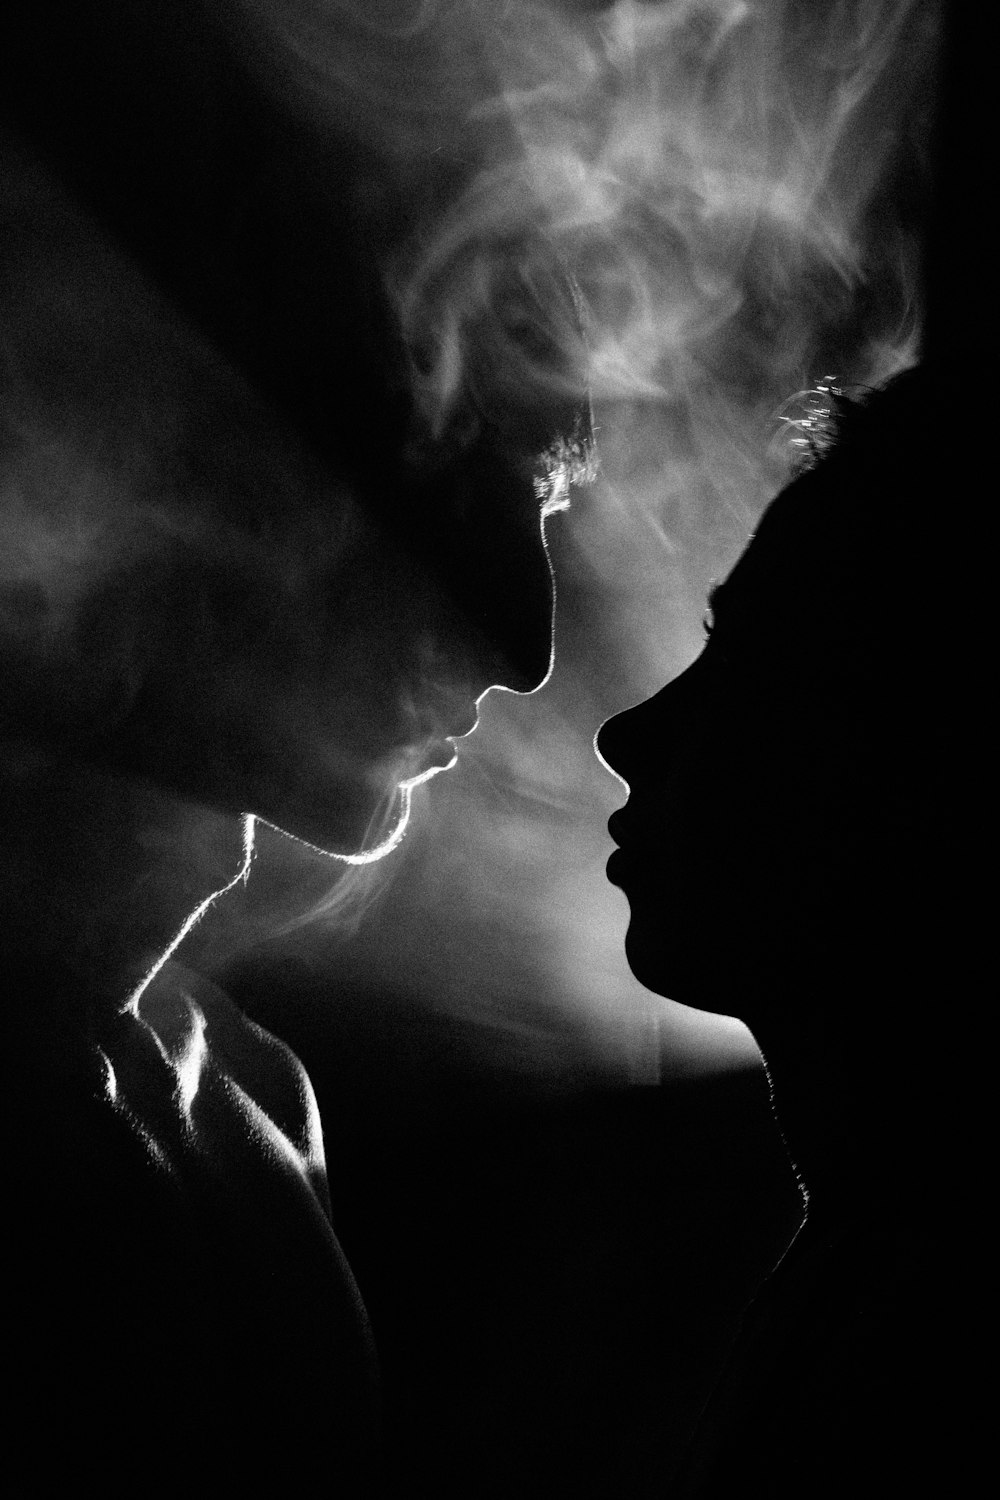 uma foto em preto e branco de uma mulher fumando um cigarro